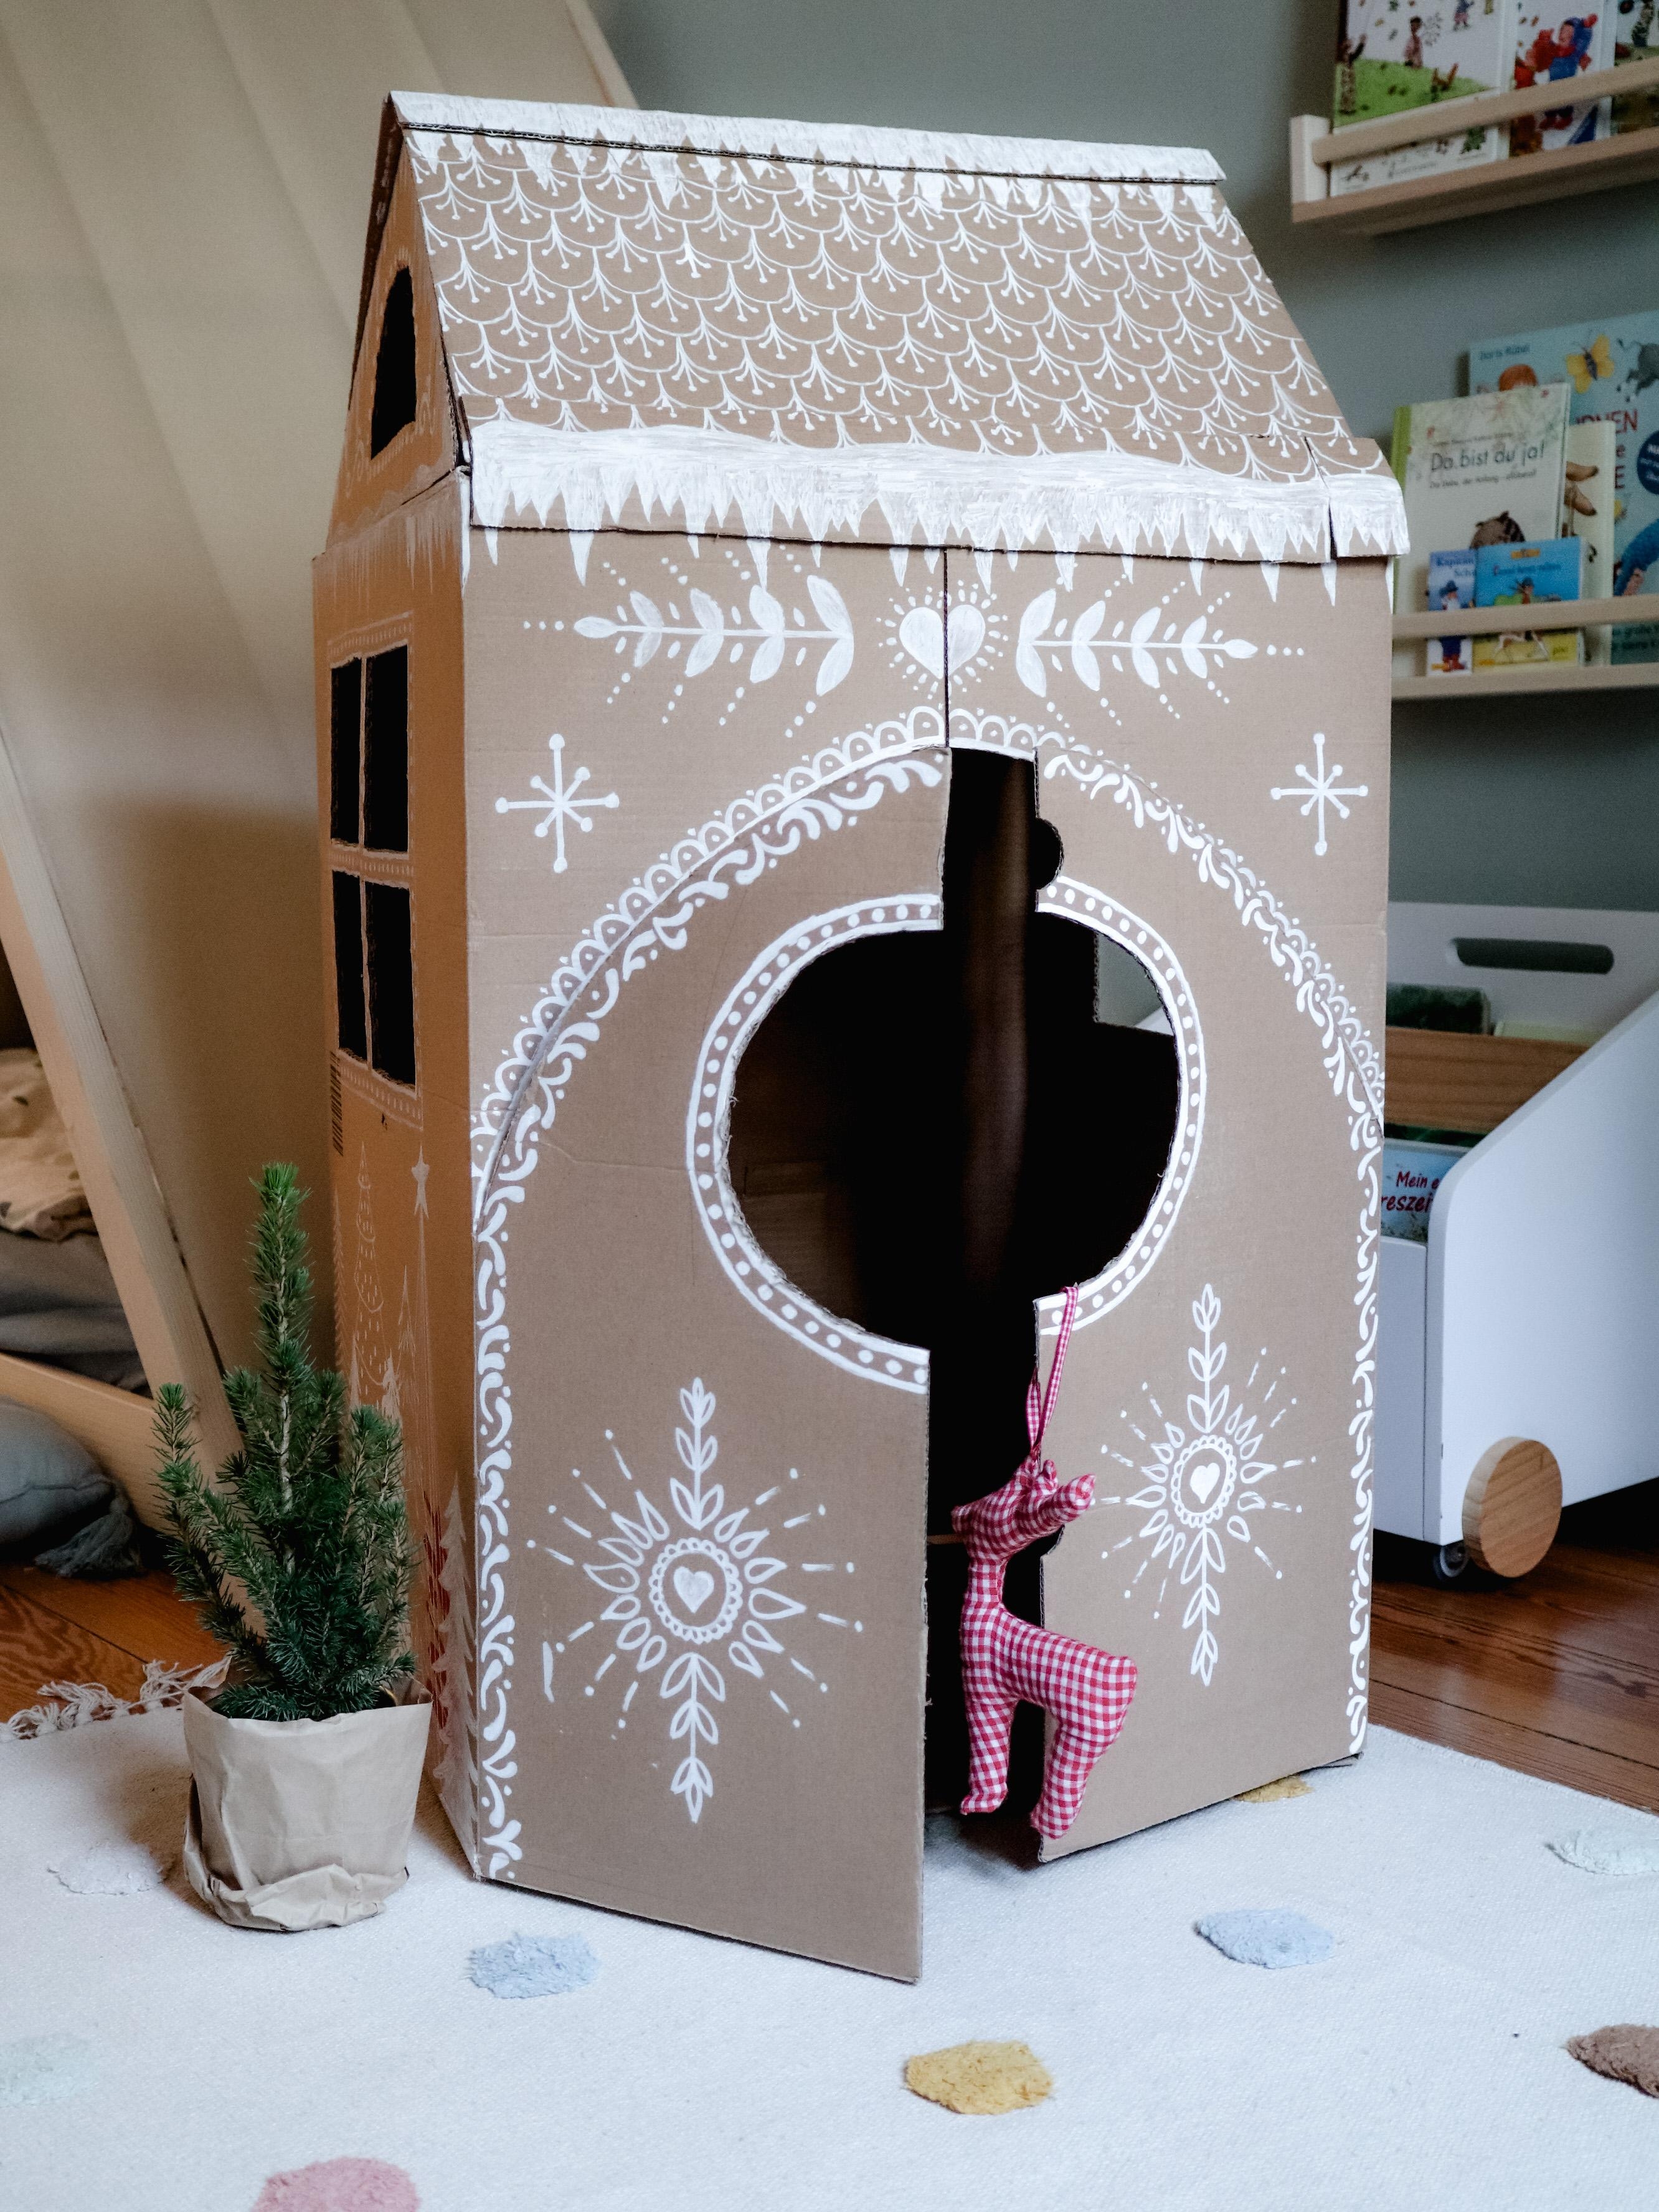 Falls ihr mal nicht wisst, was ihr mit euren Kartons anstellen sollt. Vielleicht ein #Lebkuchenhaus fürs #Kinderzimmer? #DIY #Weihnachten